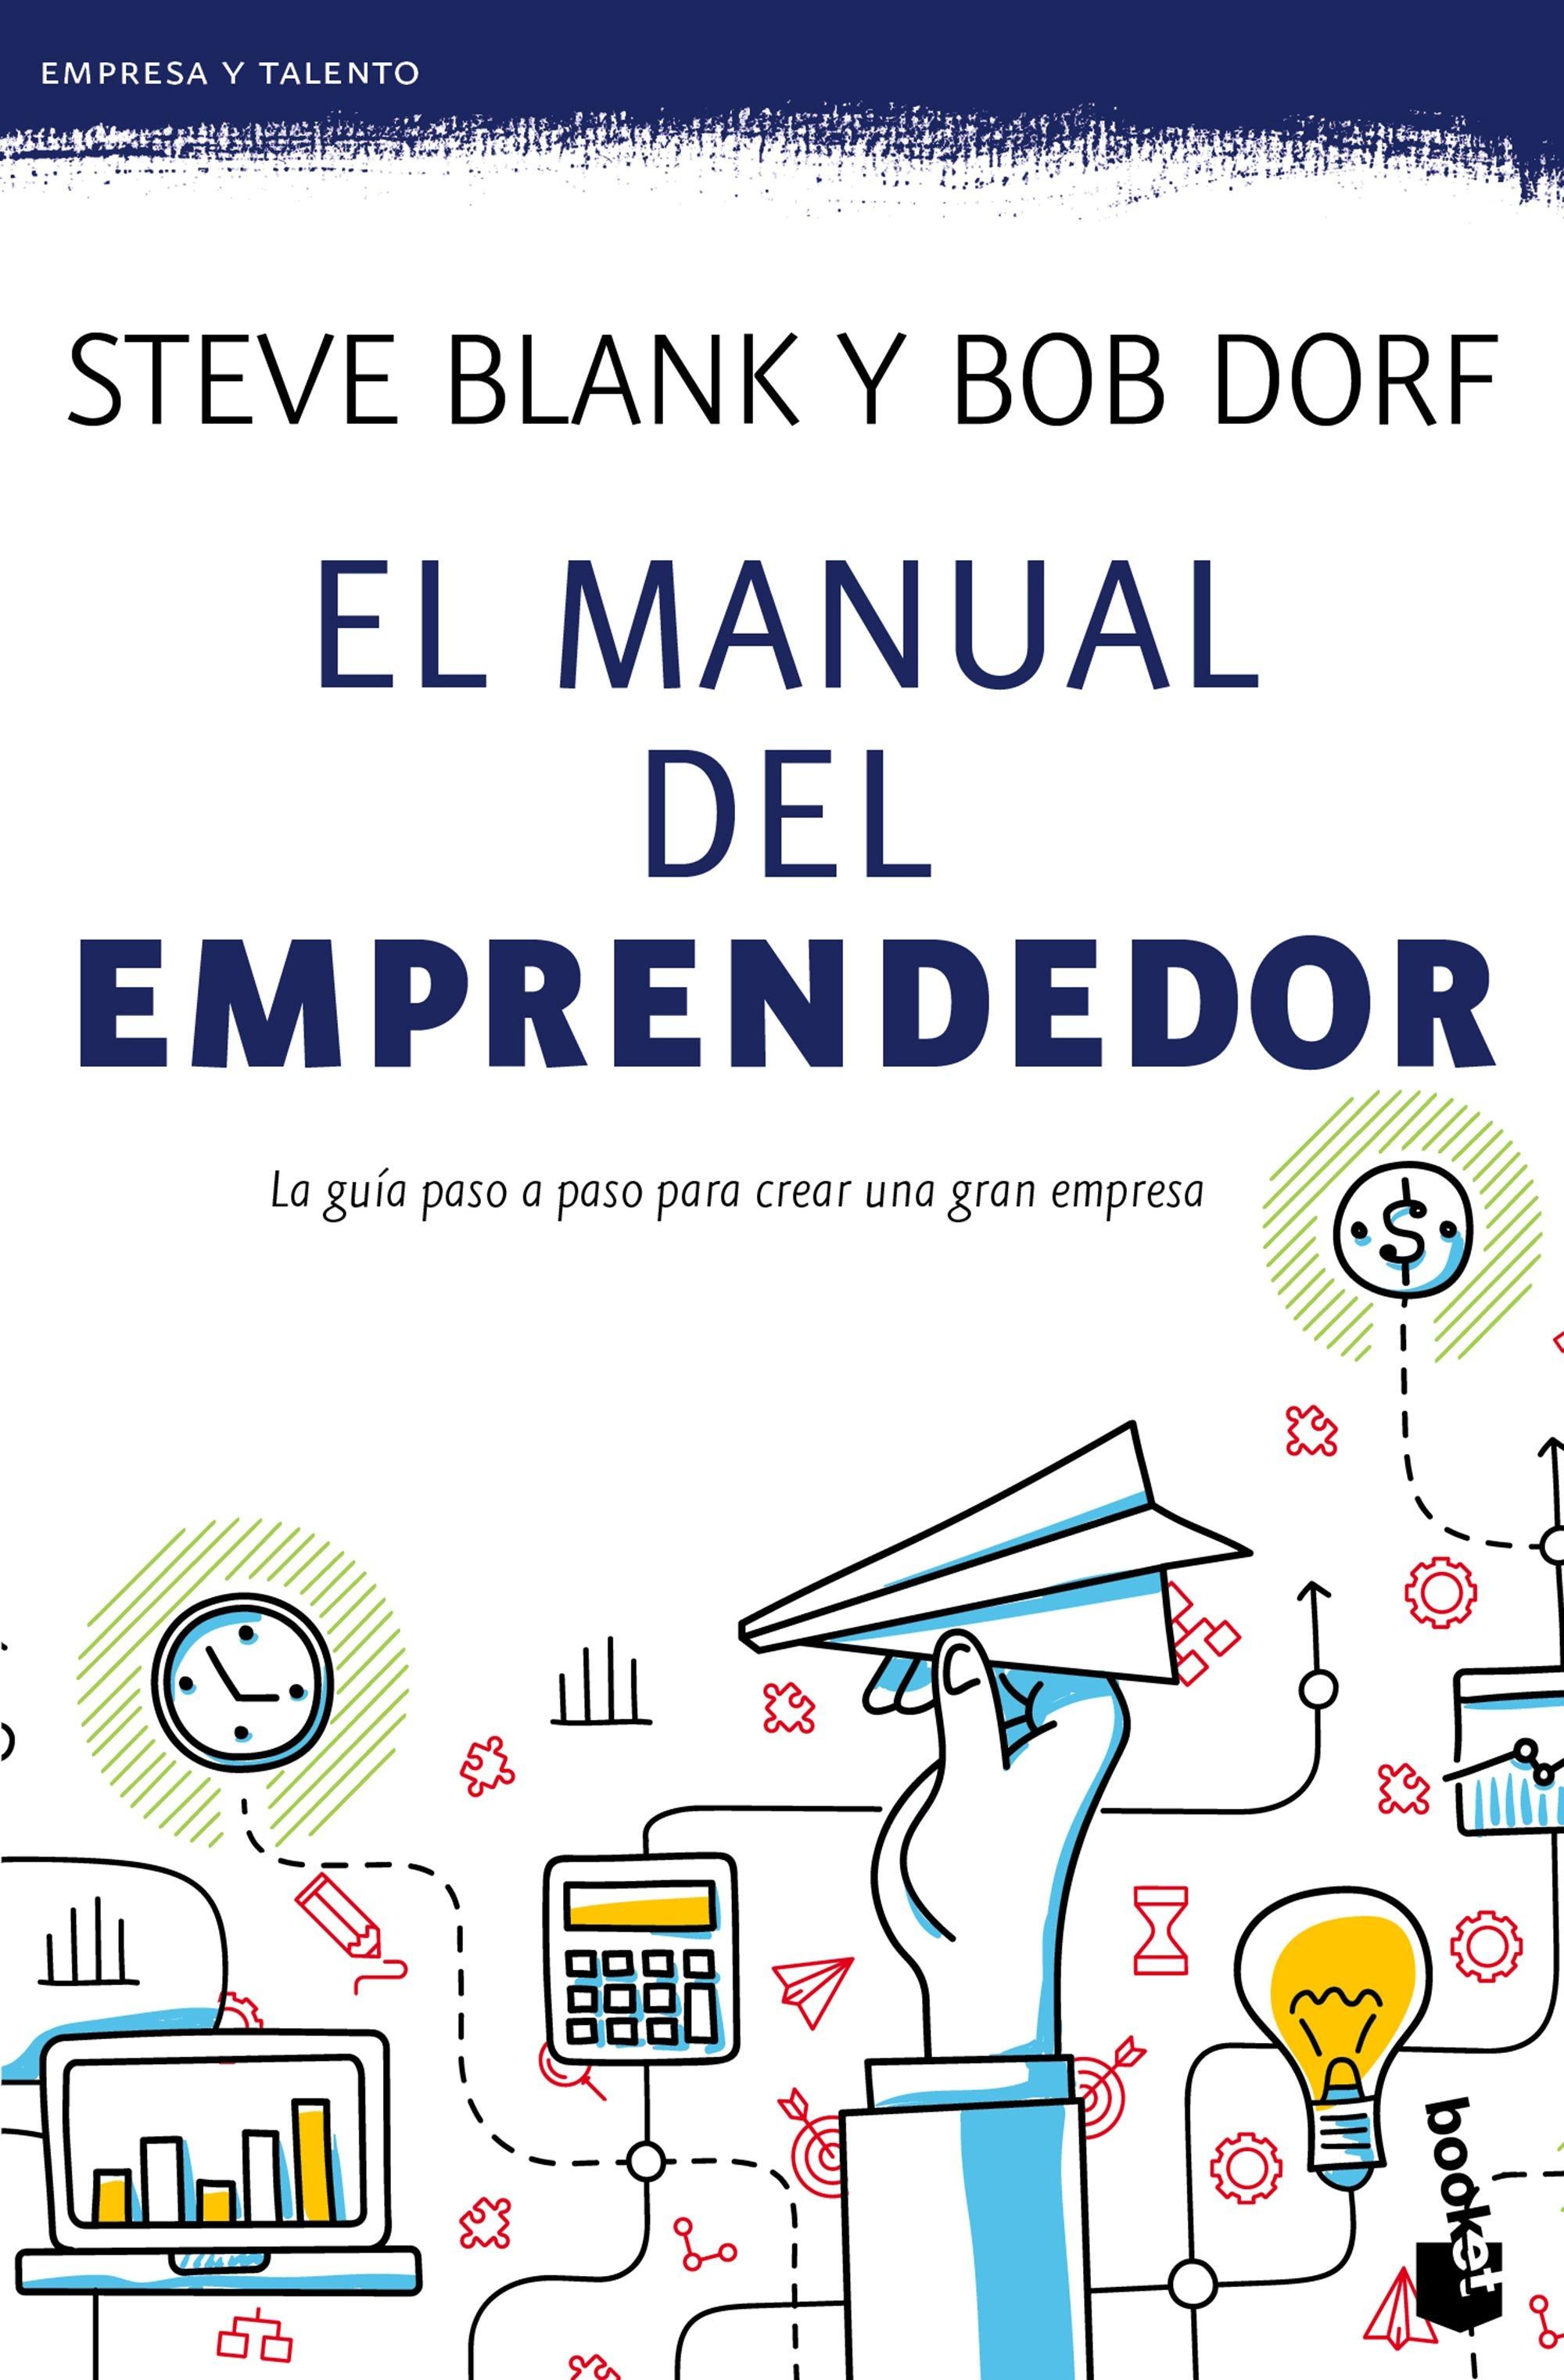 El manual del emprendedor "Guía paso a paso para crear una gran empresa"